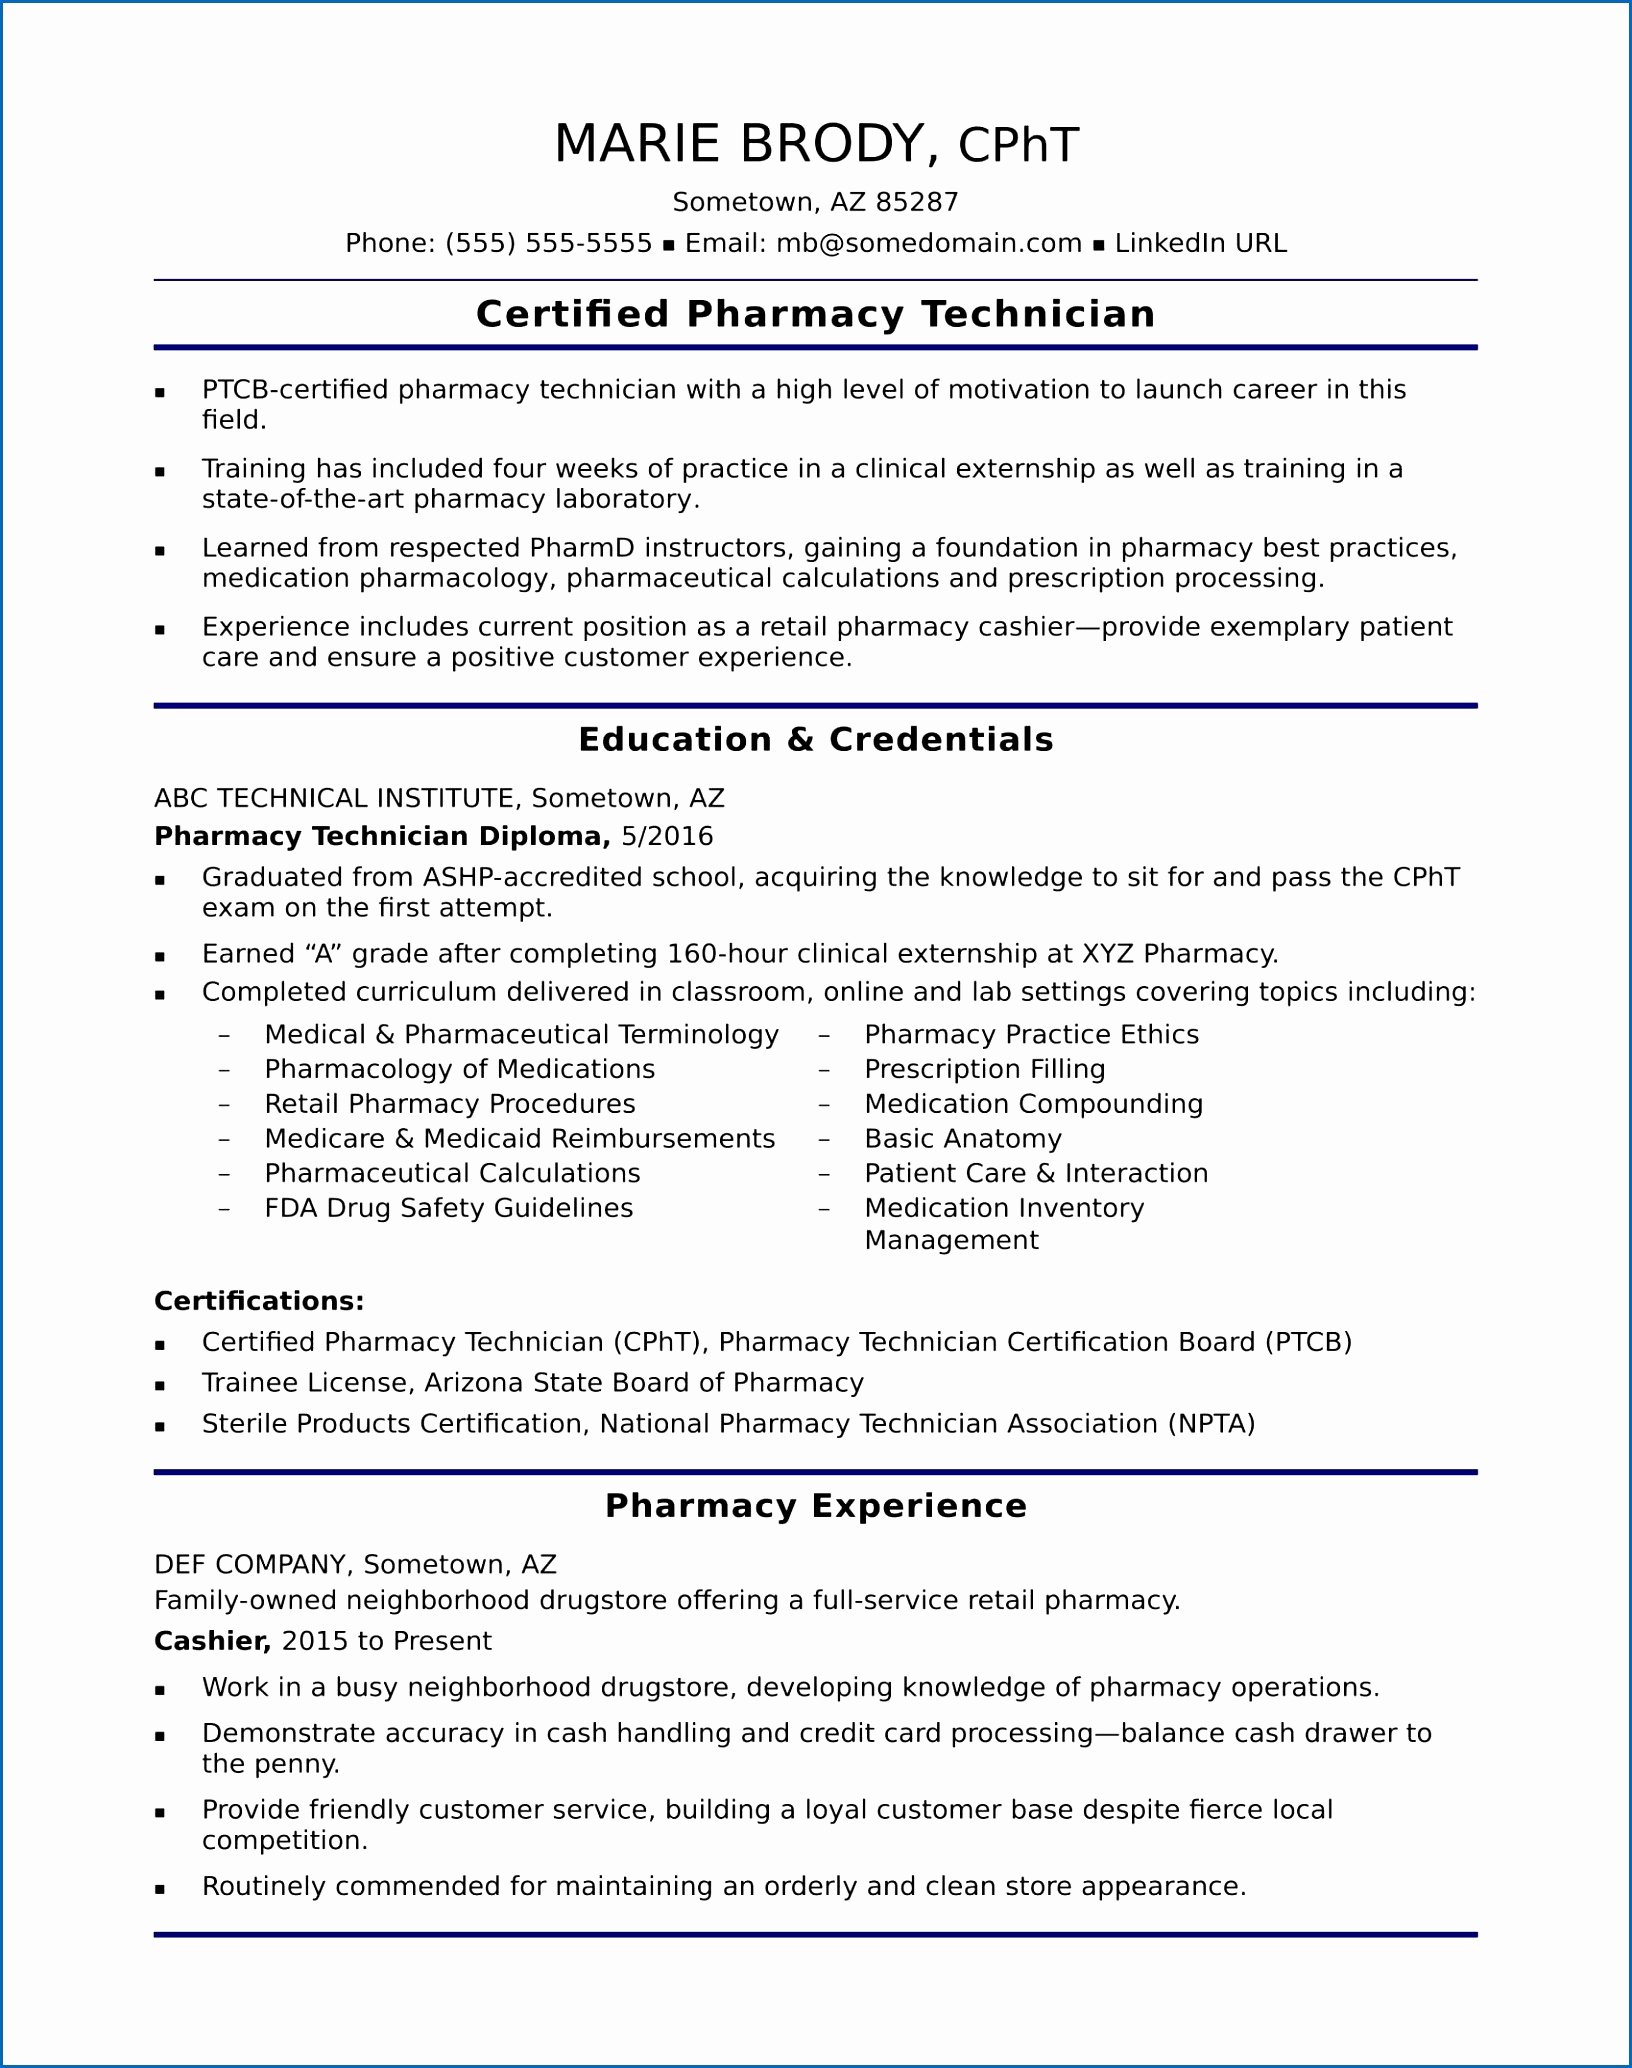 Pharmacy Technician Resume Sample Awesome 7 Resume Basic